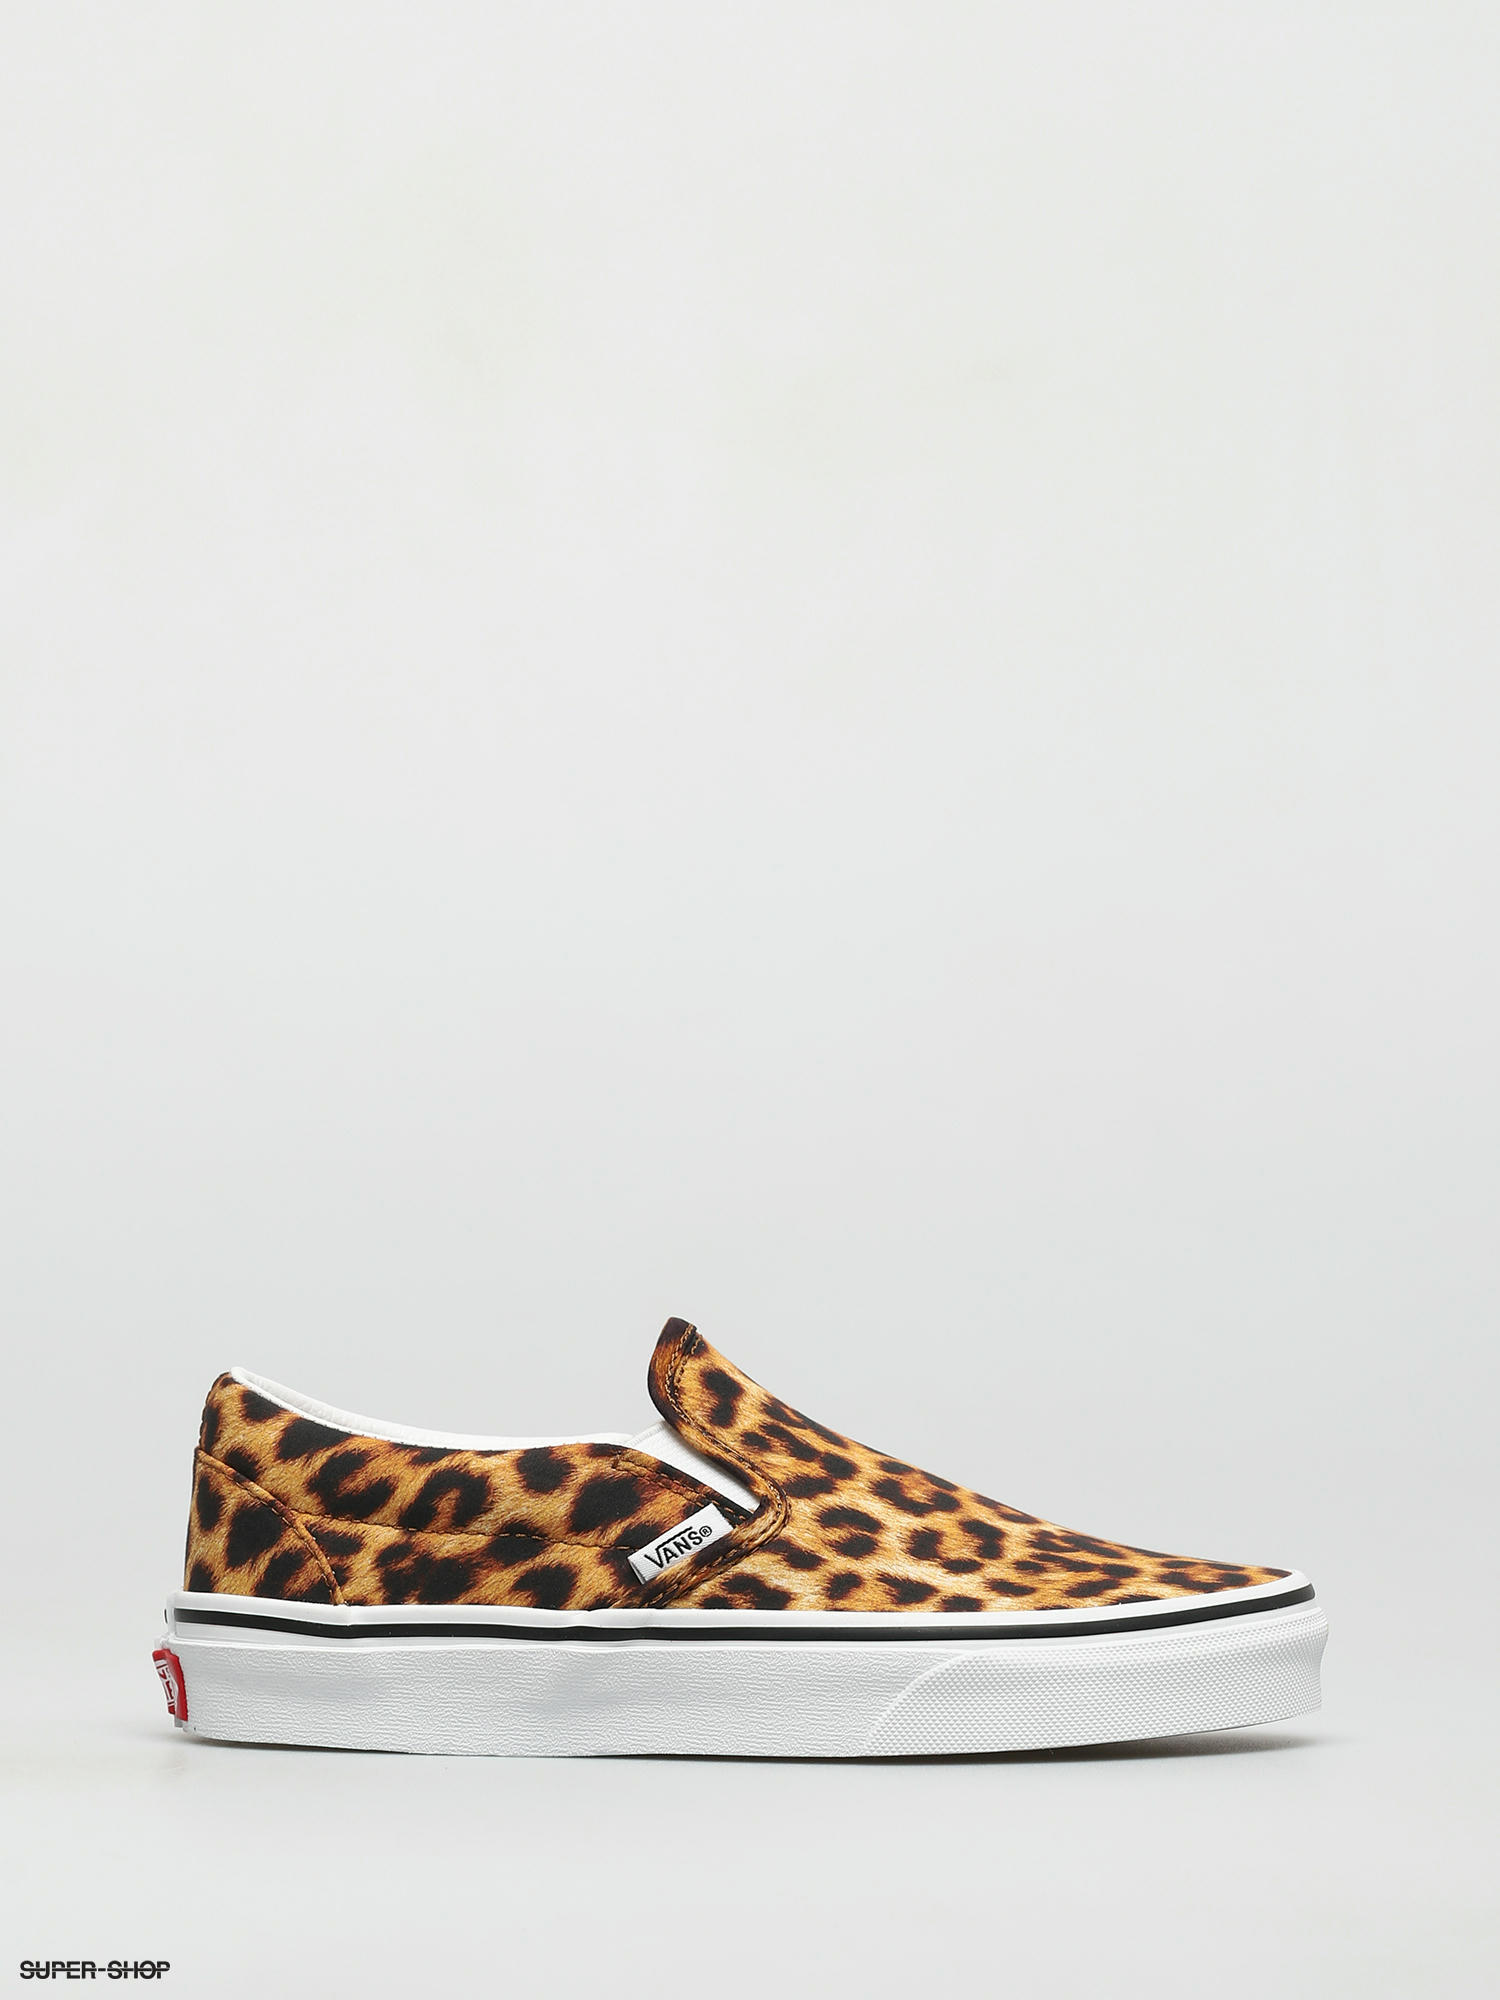 Vans Classic Slip On Shoes (leopard 